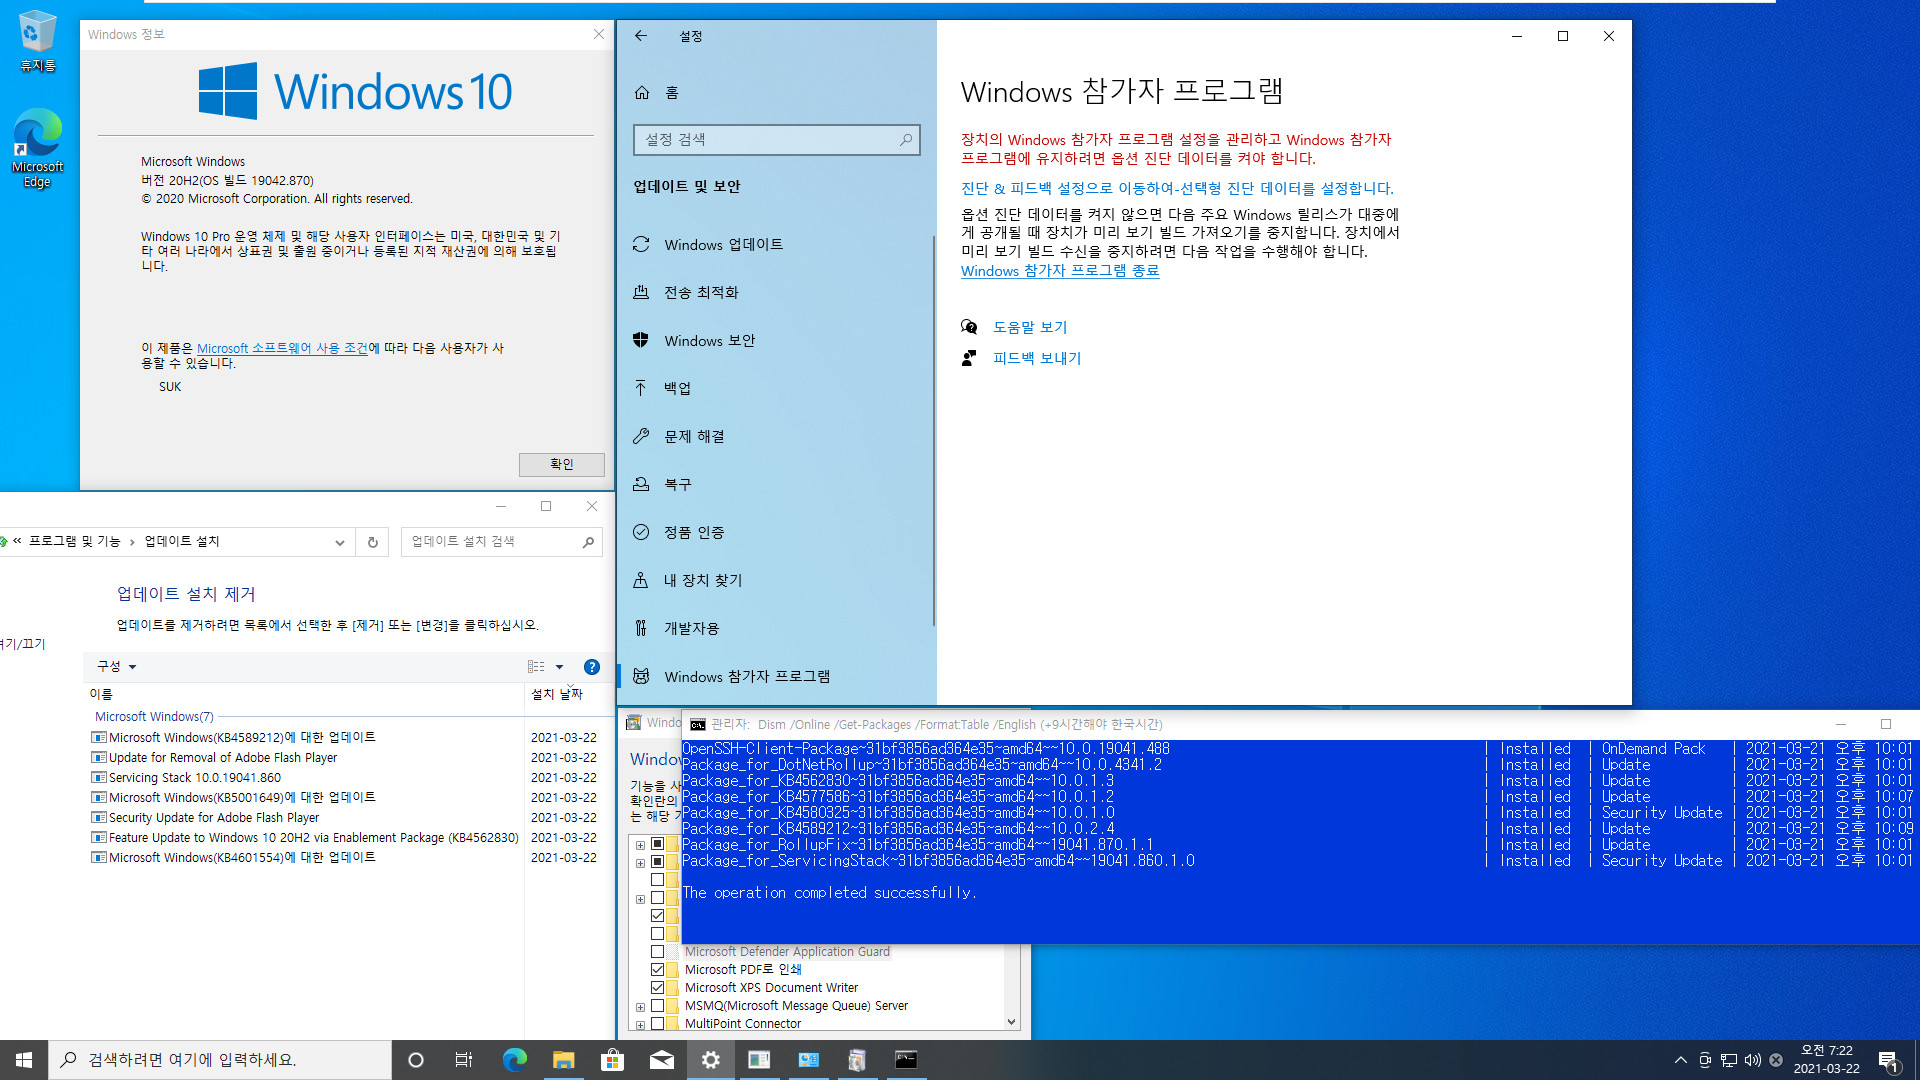 2021-03-22 정식 업데이트 확인 - KB5001649 - Windows 10 버전 20H2 (OS 빌드 19042.870) 2021-03-19일자 선택적 업데이트까지 가능함 2021-03-22_072236.jpg